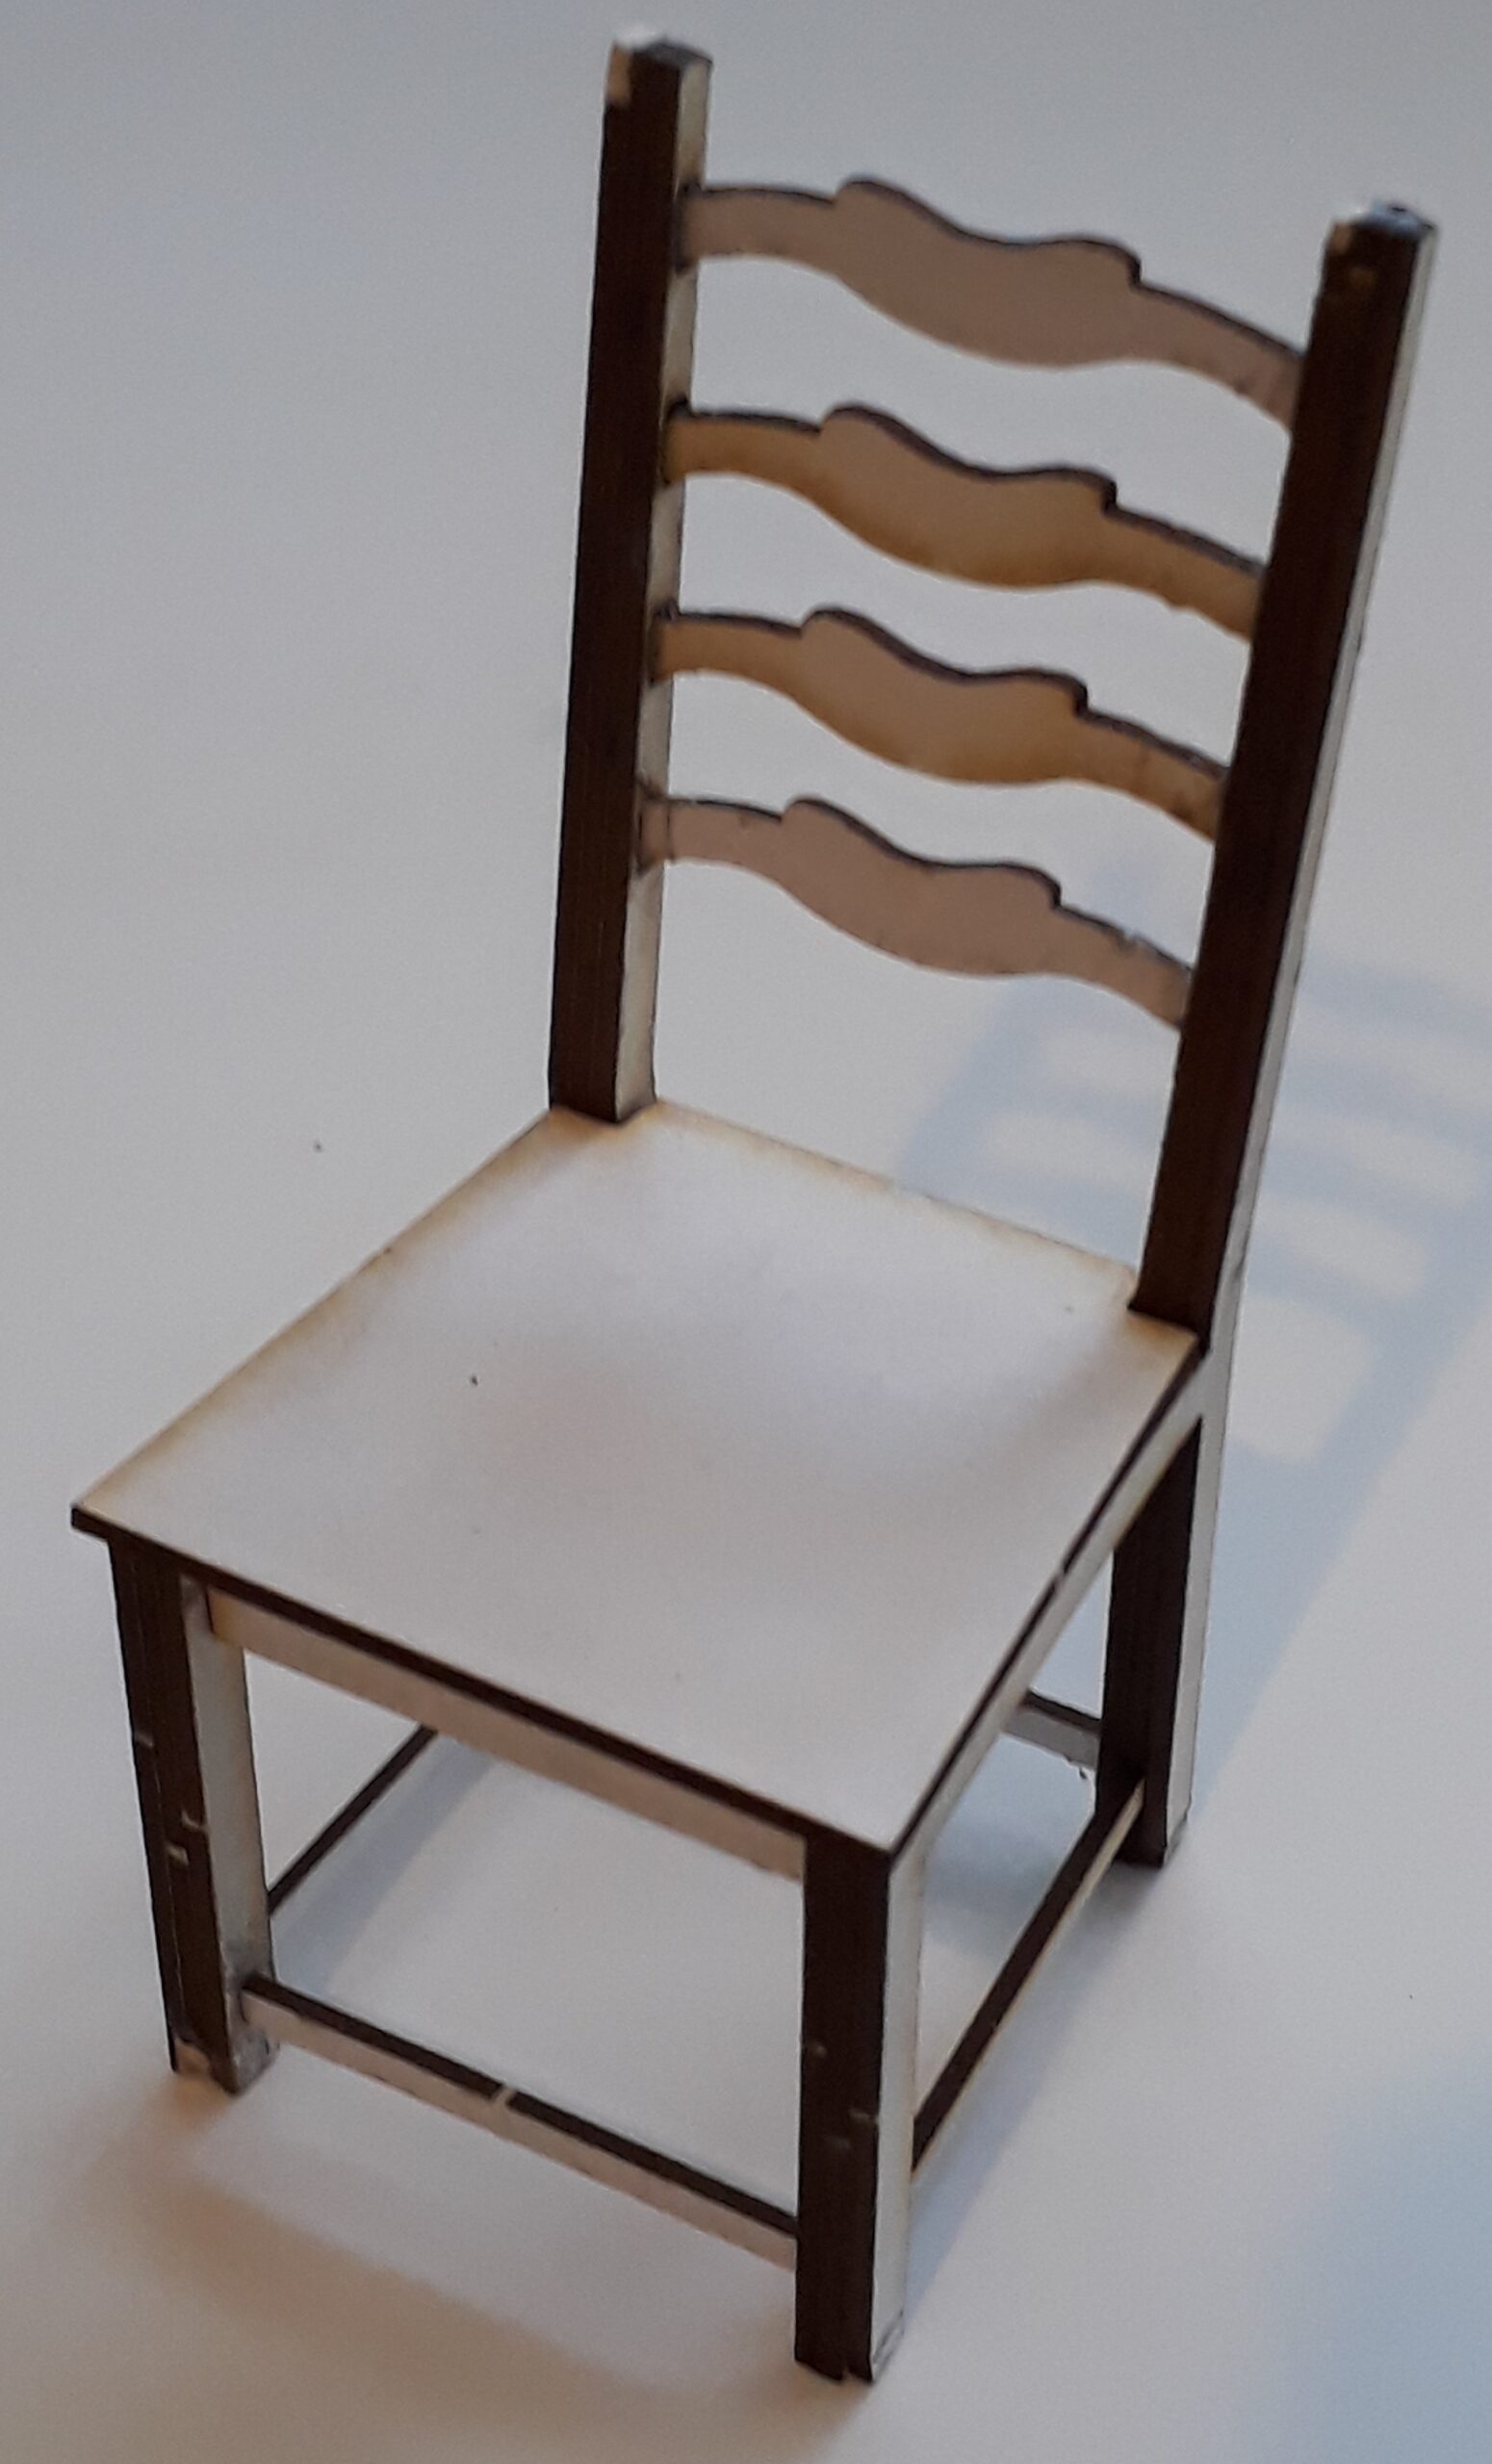 3067 Chair ladder back 1:48 – CastleCrafts